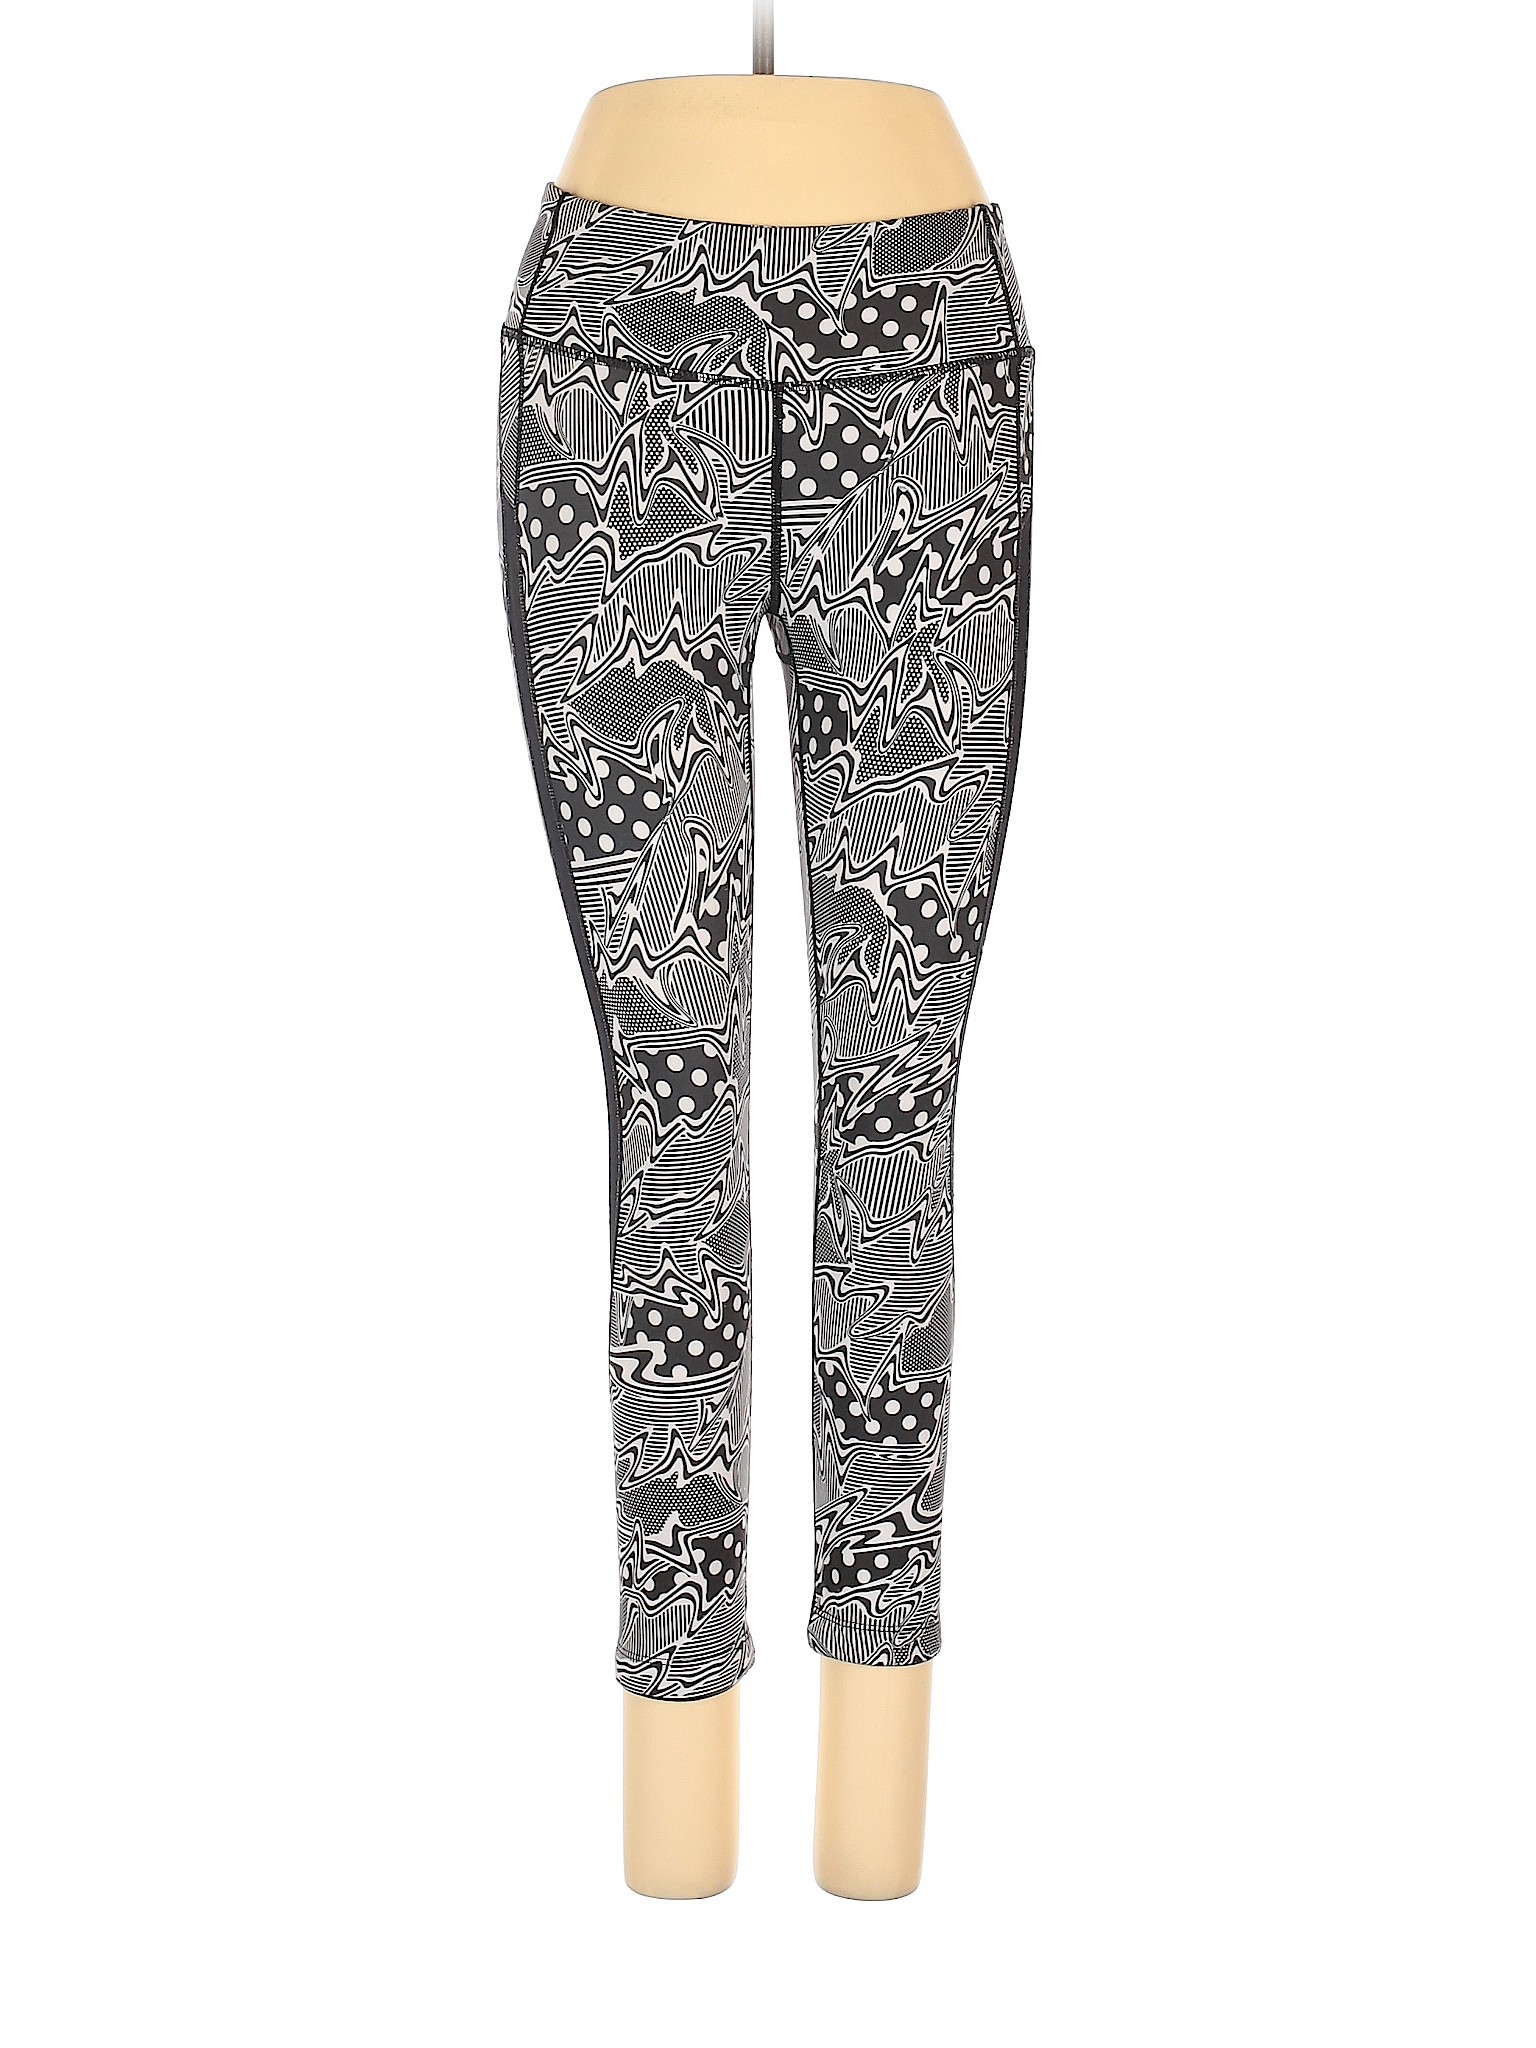 Assorted Brands Women Gray Active Pants XS | eBay